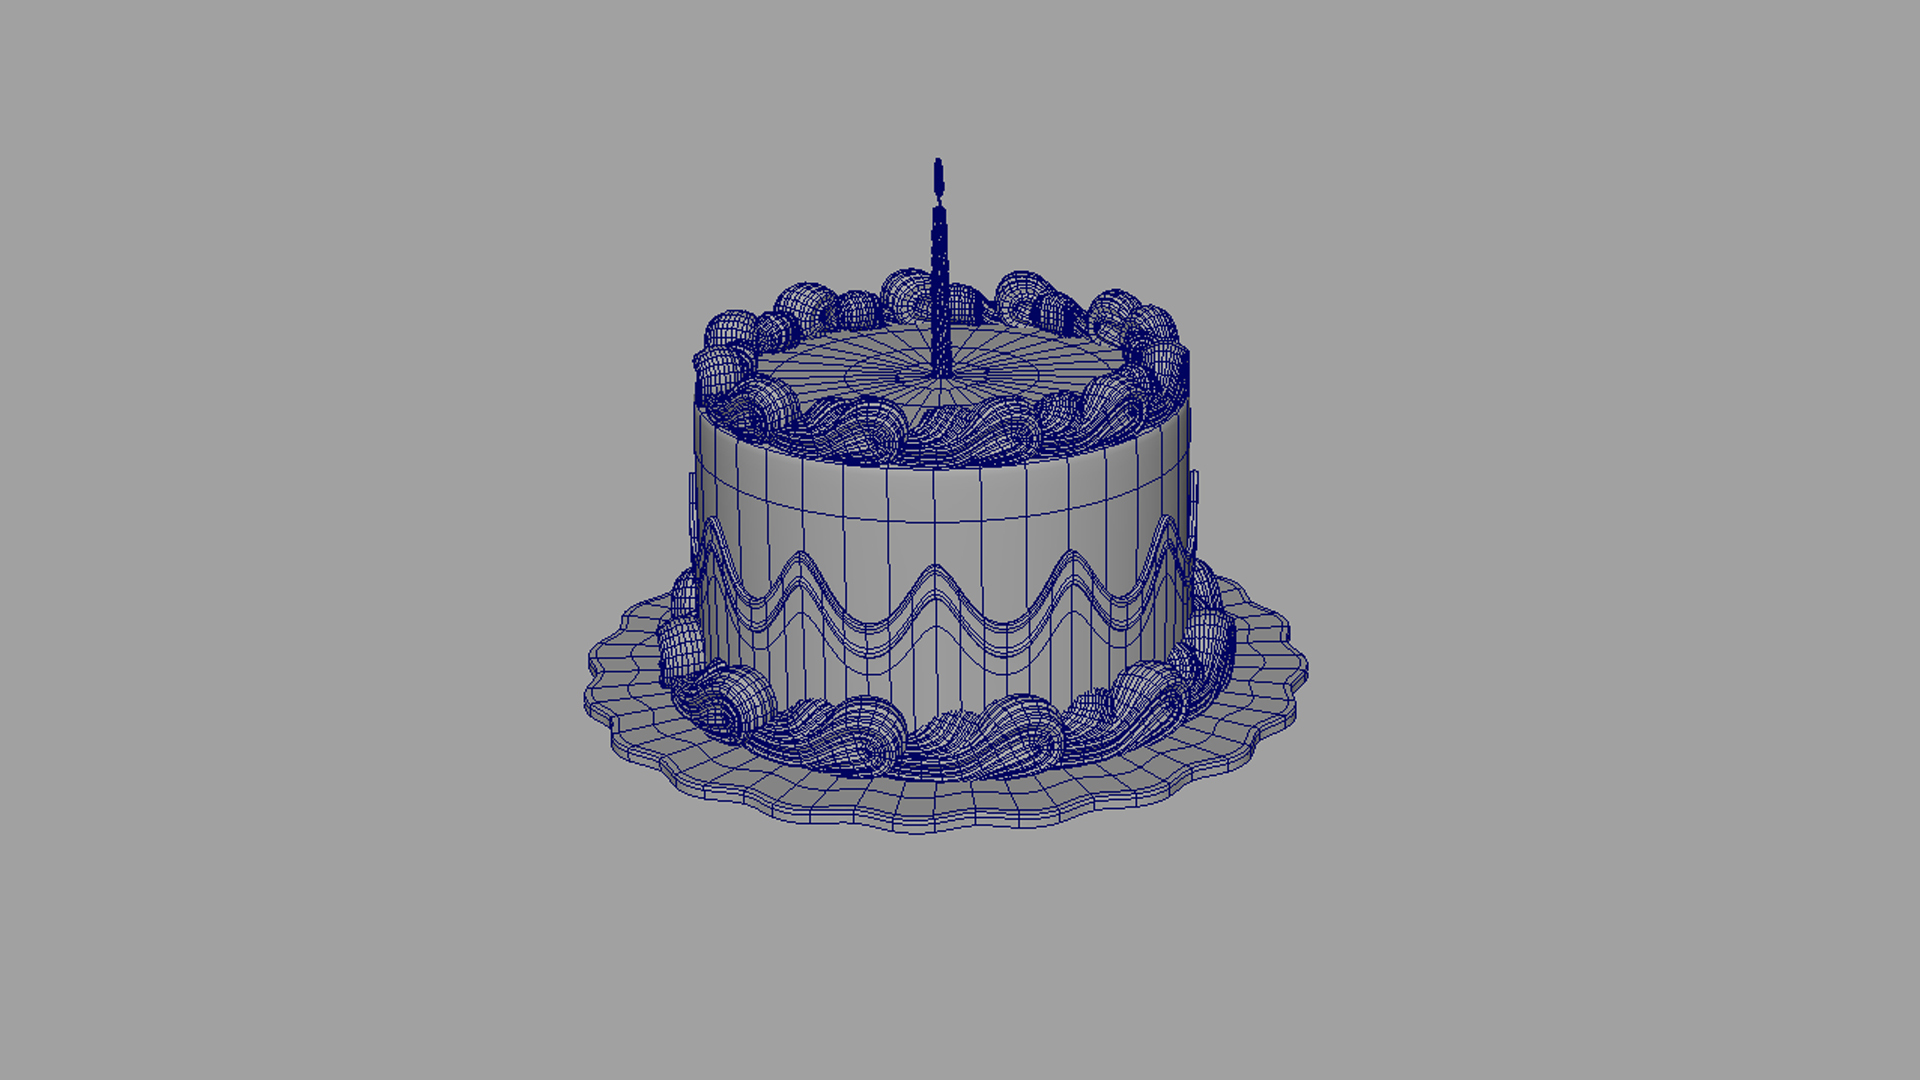 【蛋糕3d模型】建E网_蛋糕3d模型下载[ID:100879993]_打造3d蛋糕模型免费下载平台